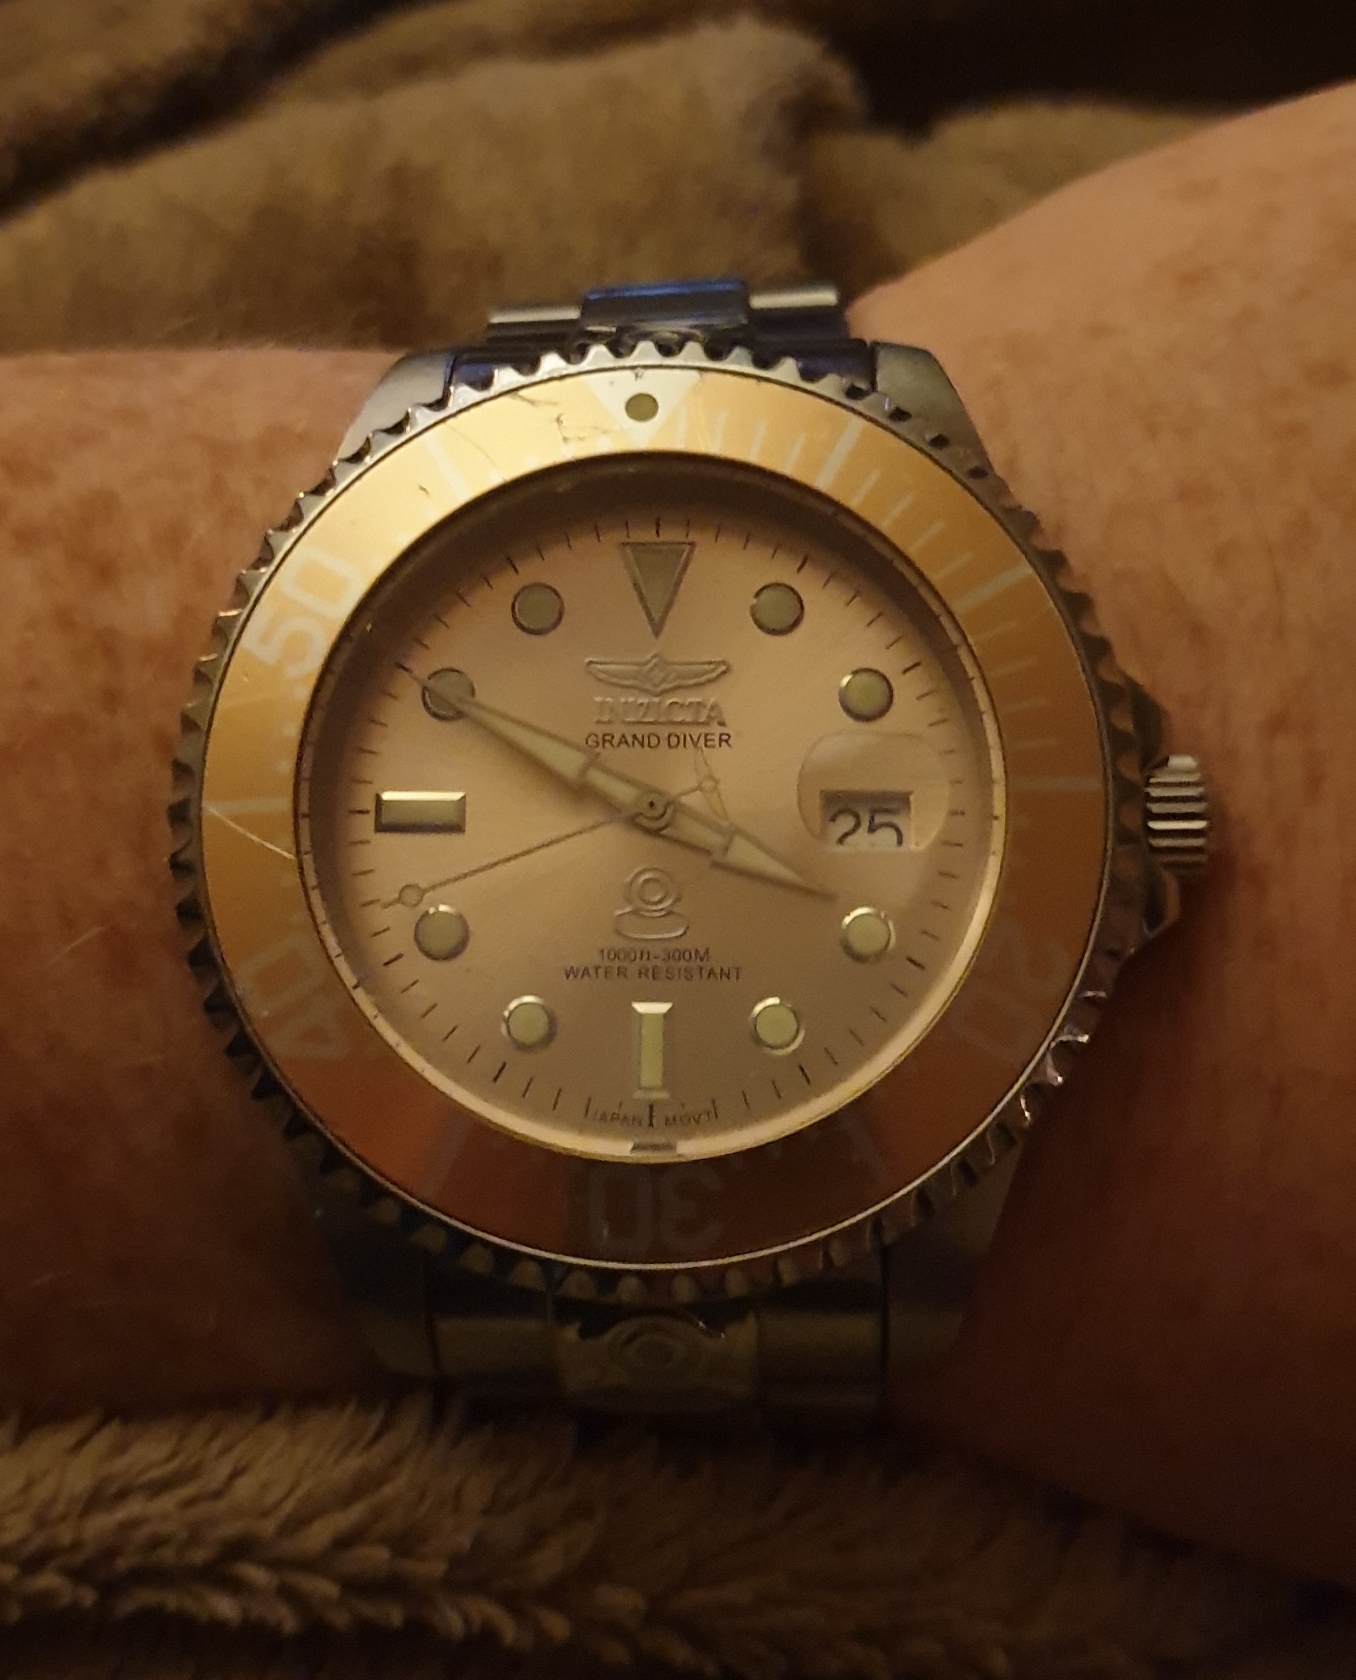 My Prison watch! The Invicta Grand Diver Automatic